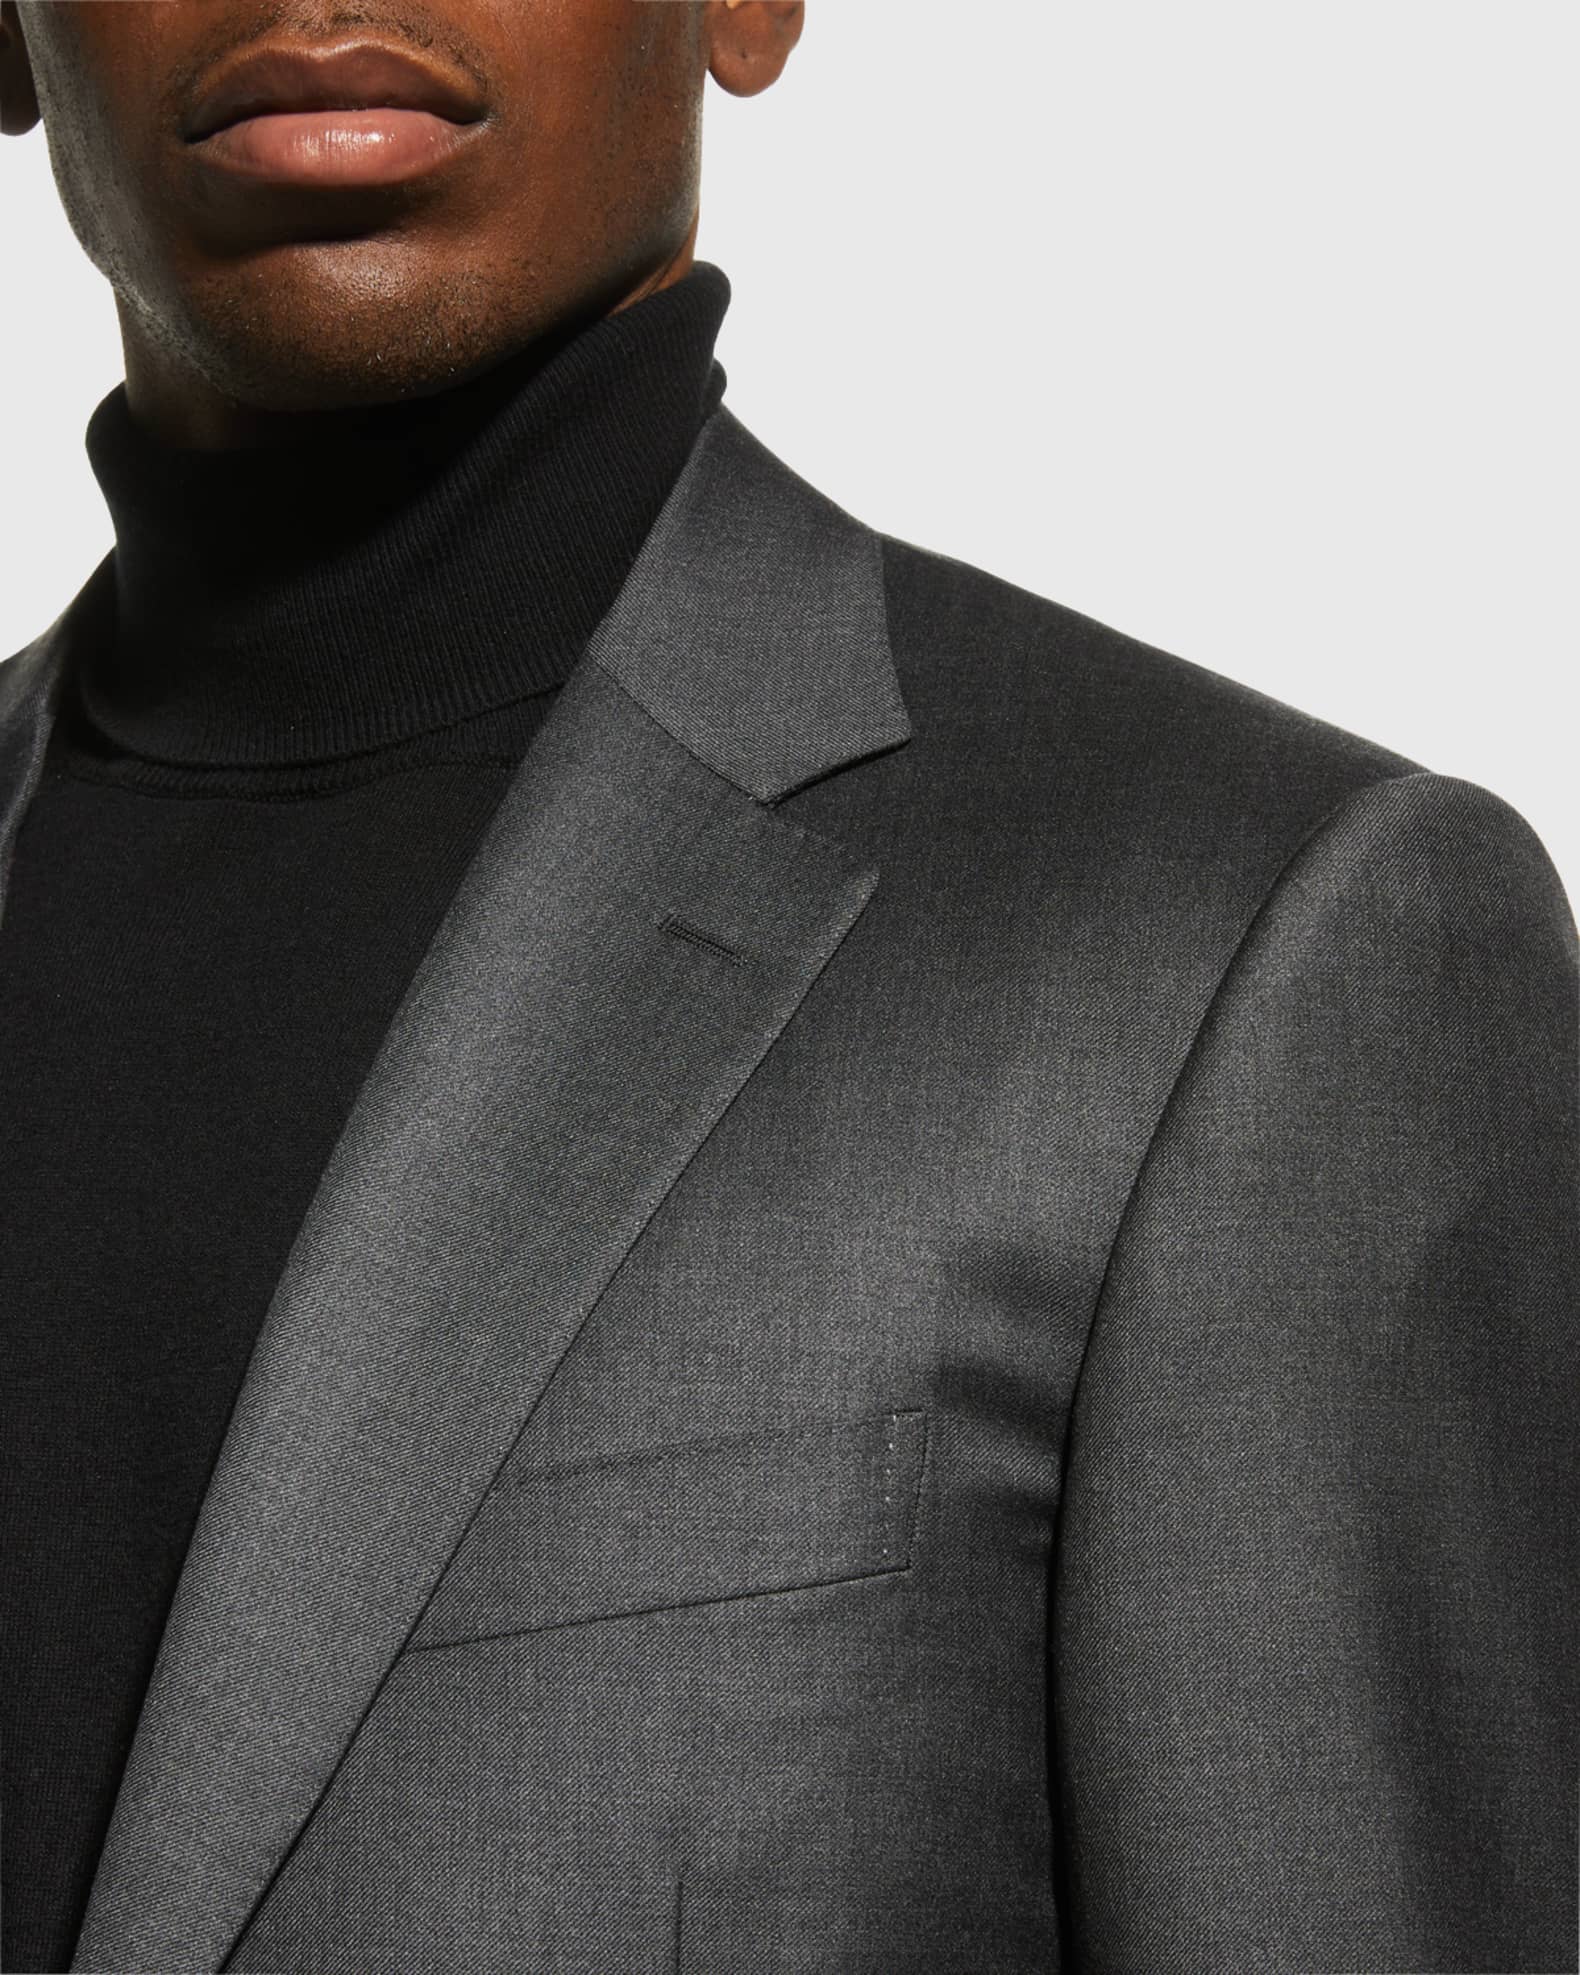 Canali Men's Solid Wool Suit | Neiman Marcus